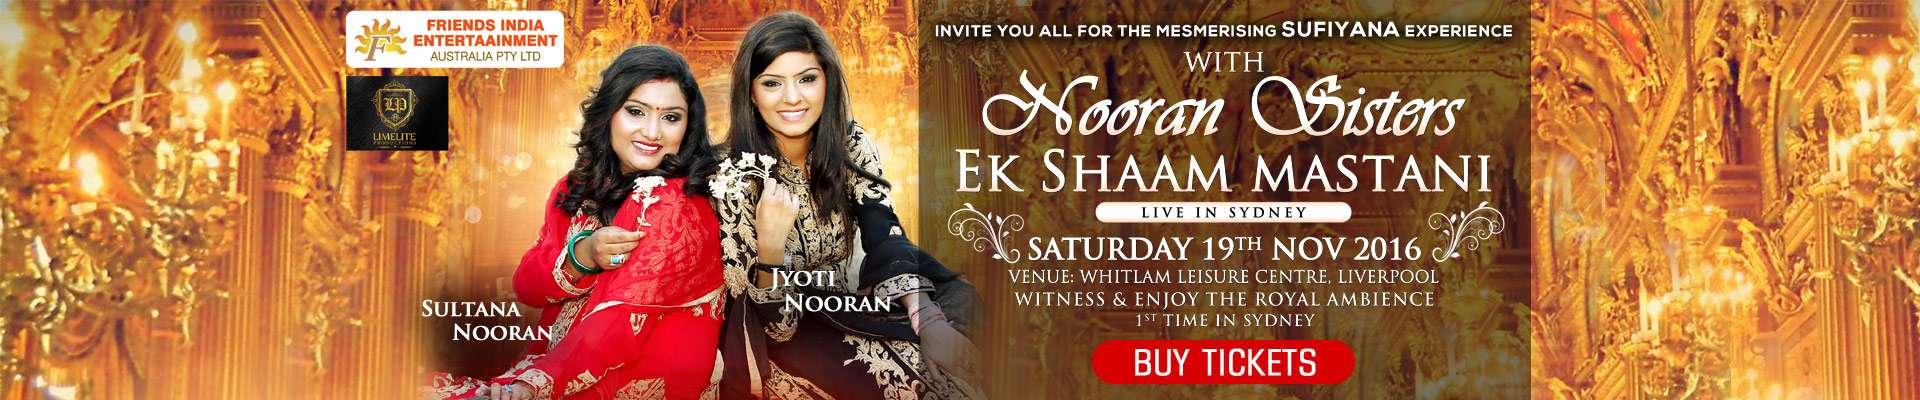 Ek Shaam Mastani with Nooran Sisters